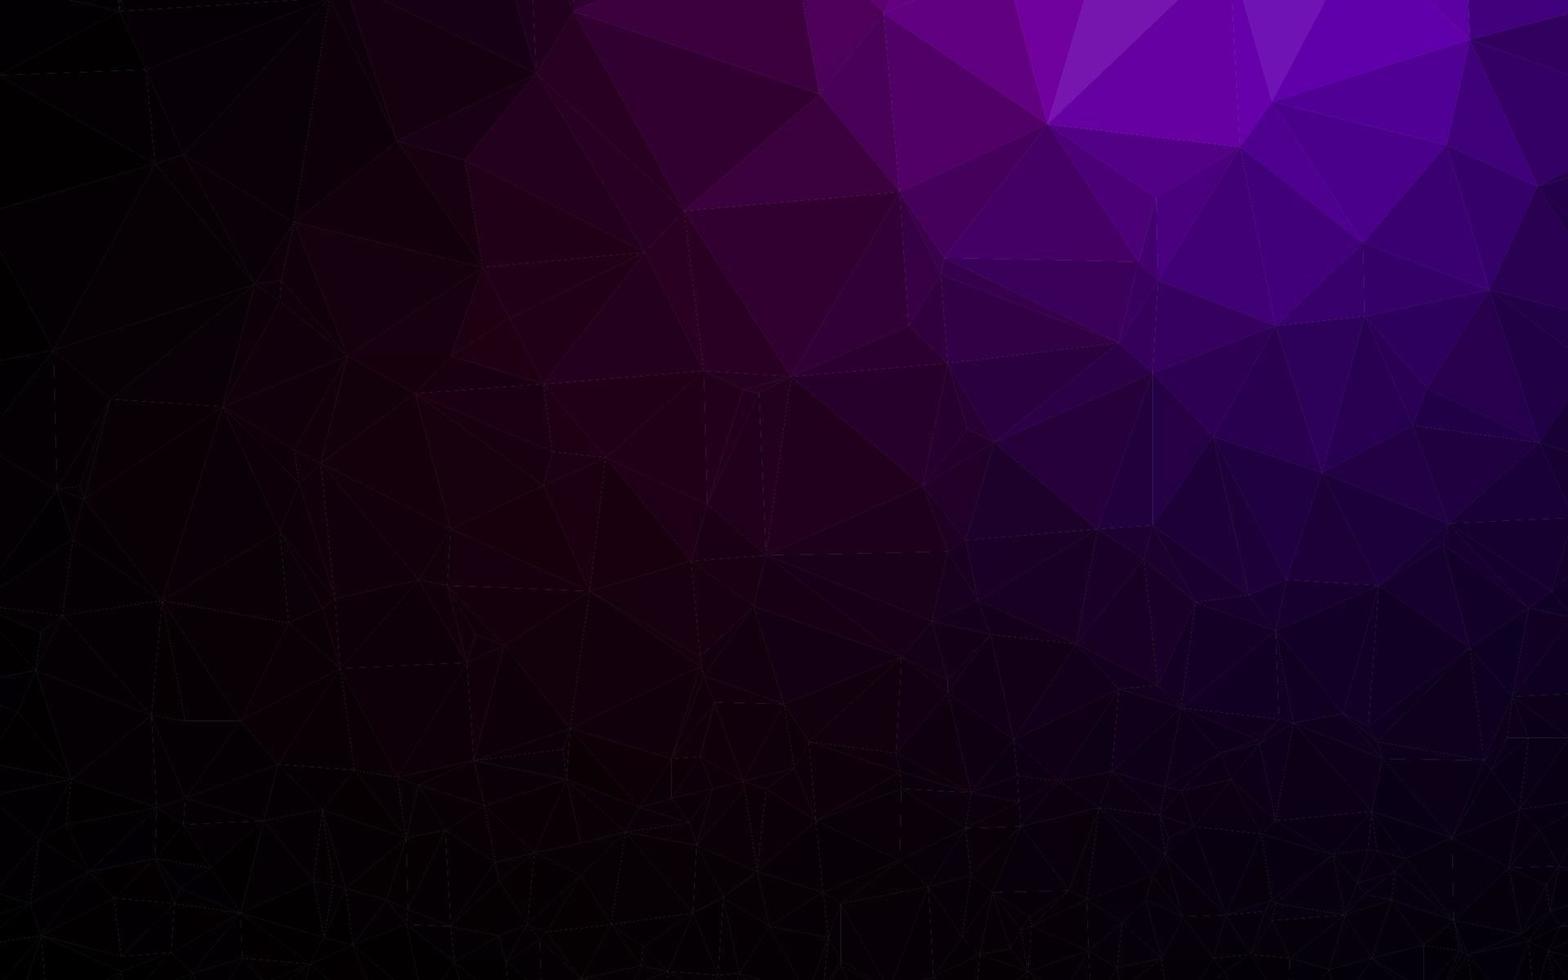 dunkelviolettes Vektor abstraktes polygonales Layout.